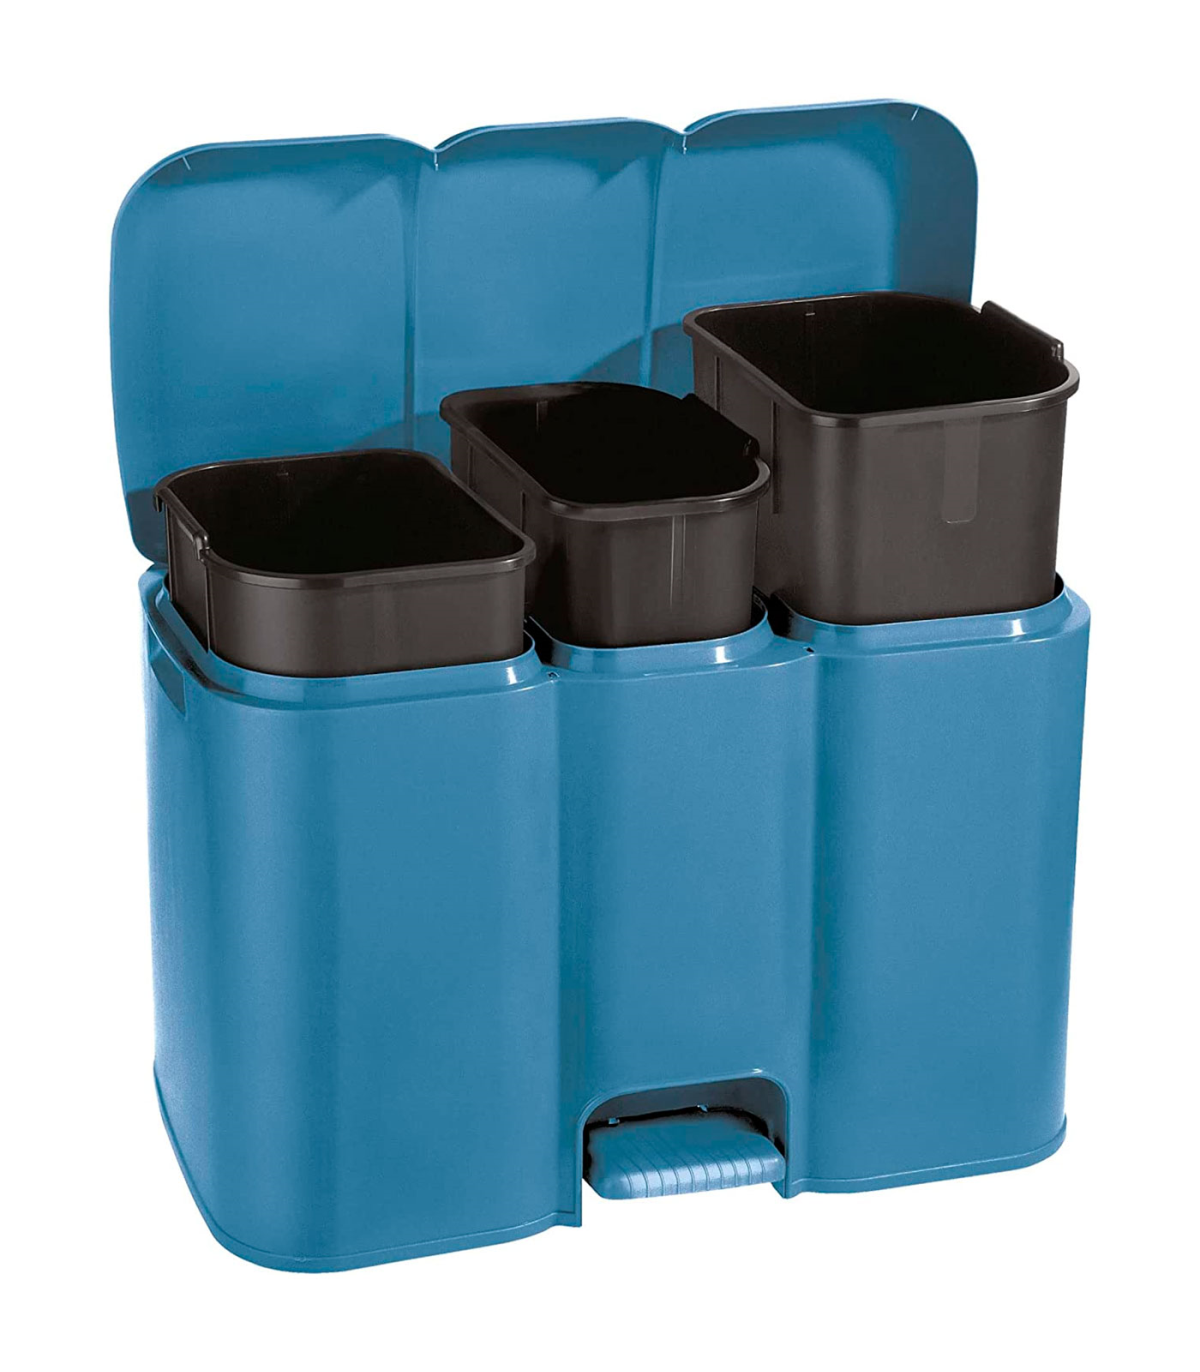 Tradineur - Cubo de basura rectangular con tapa - Fabricado en Plástico -  Capacidad de 28 Litros - 44,5 x 35 x 25 cm - Color Ale